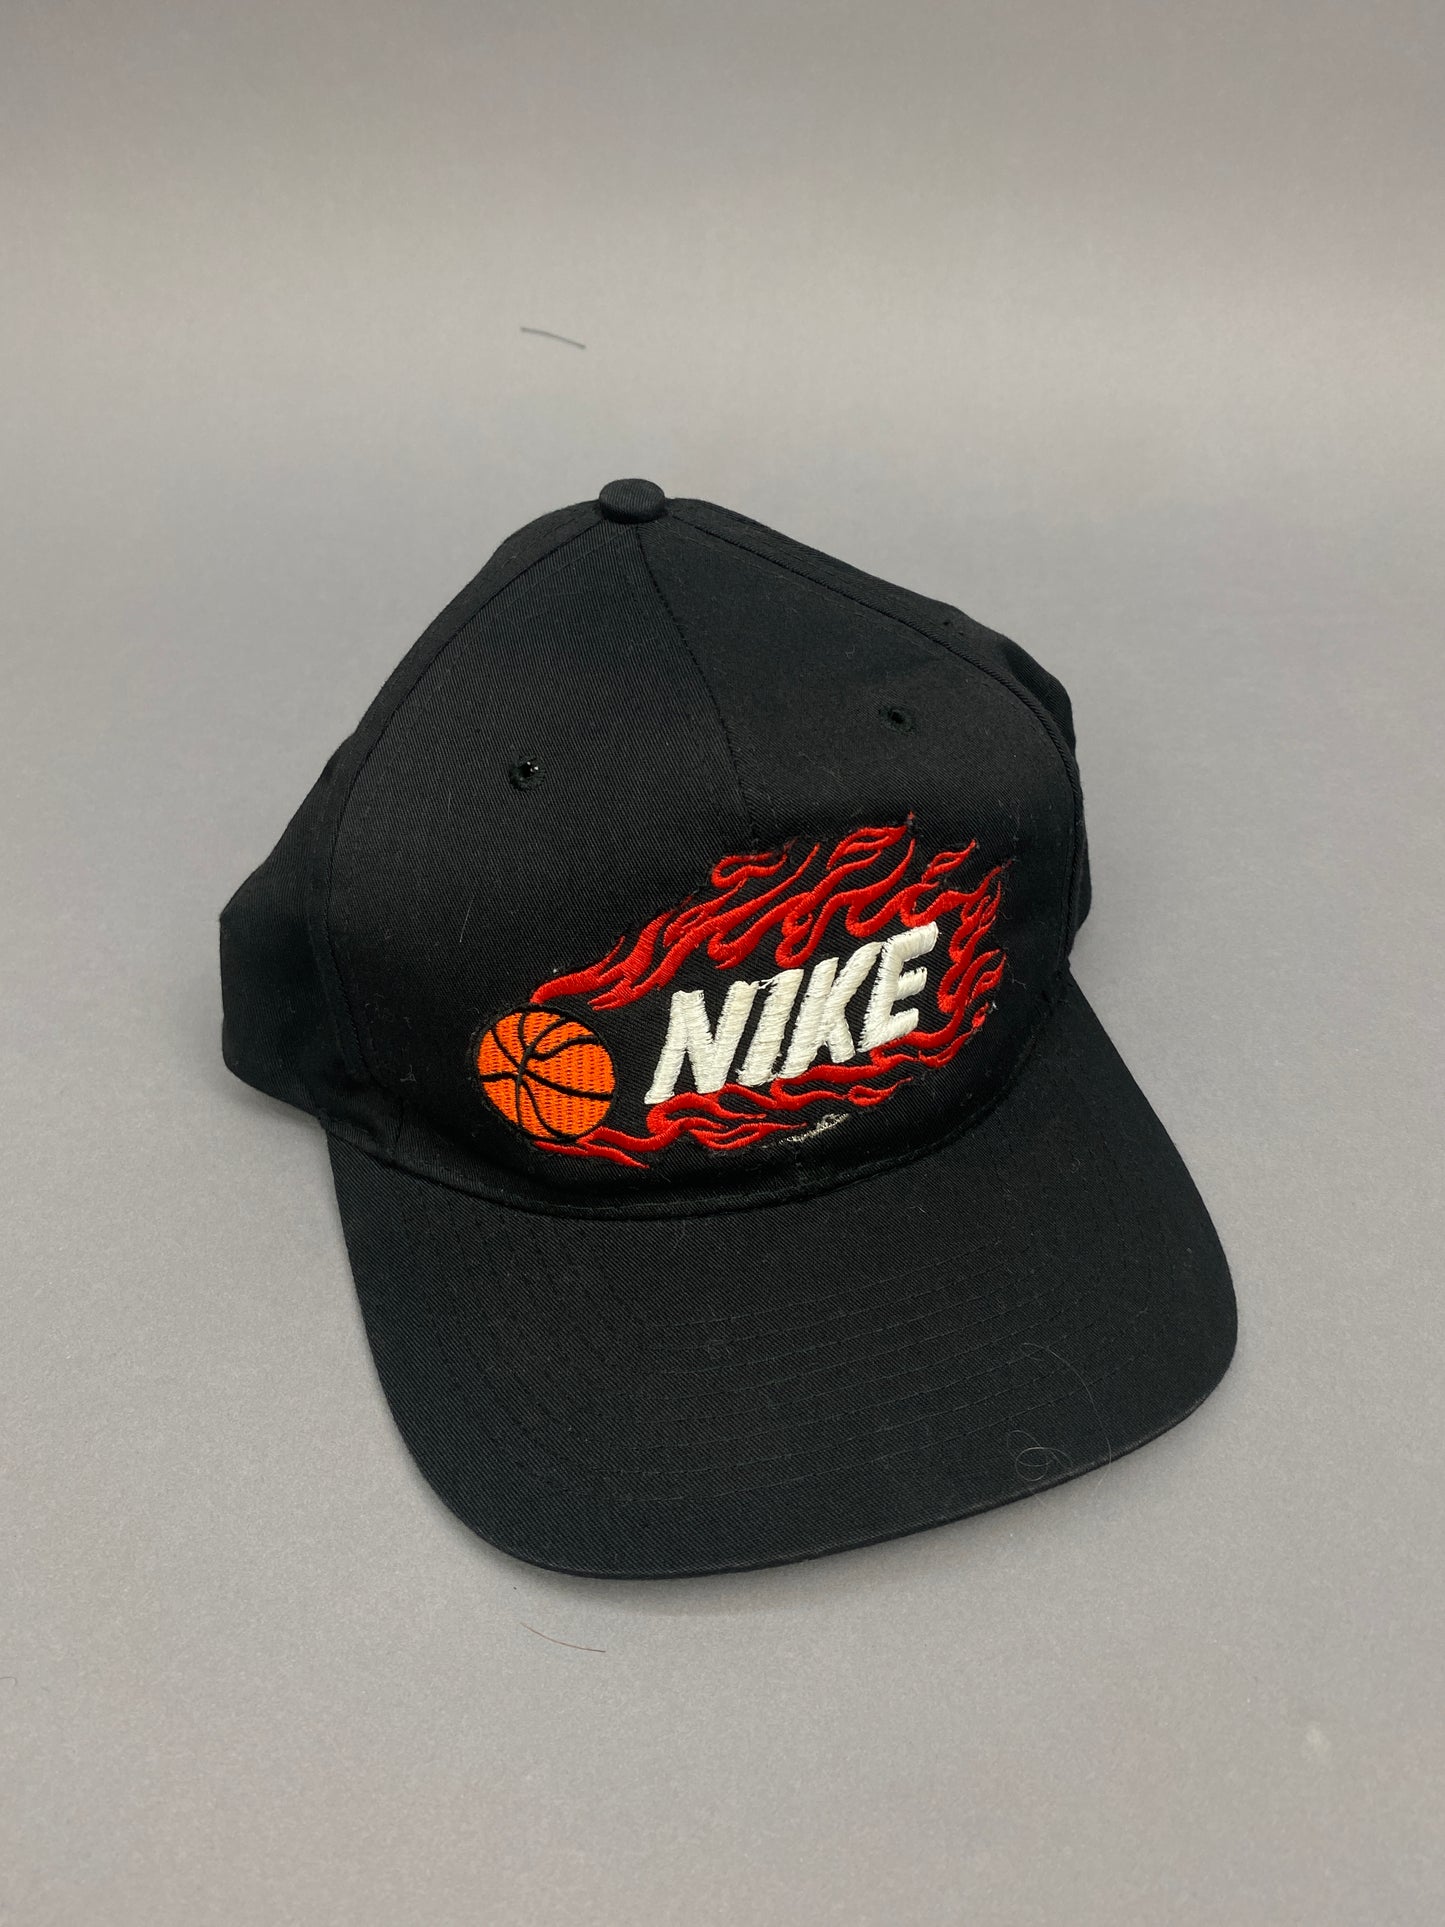 Nike Flames Vintage Cap